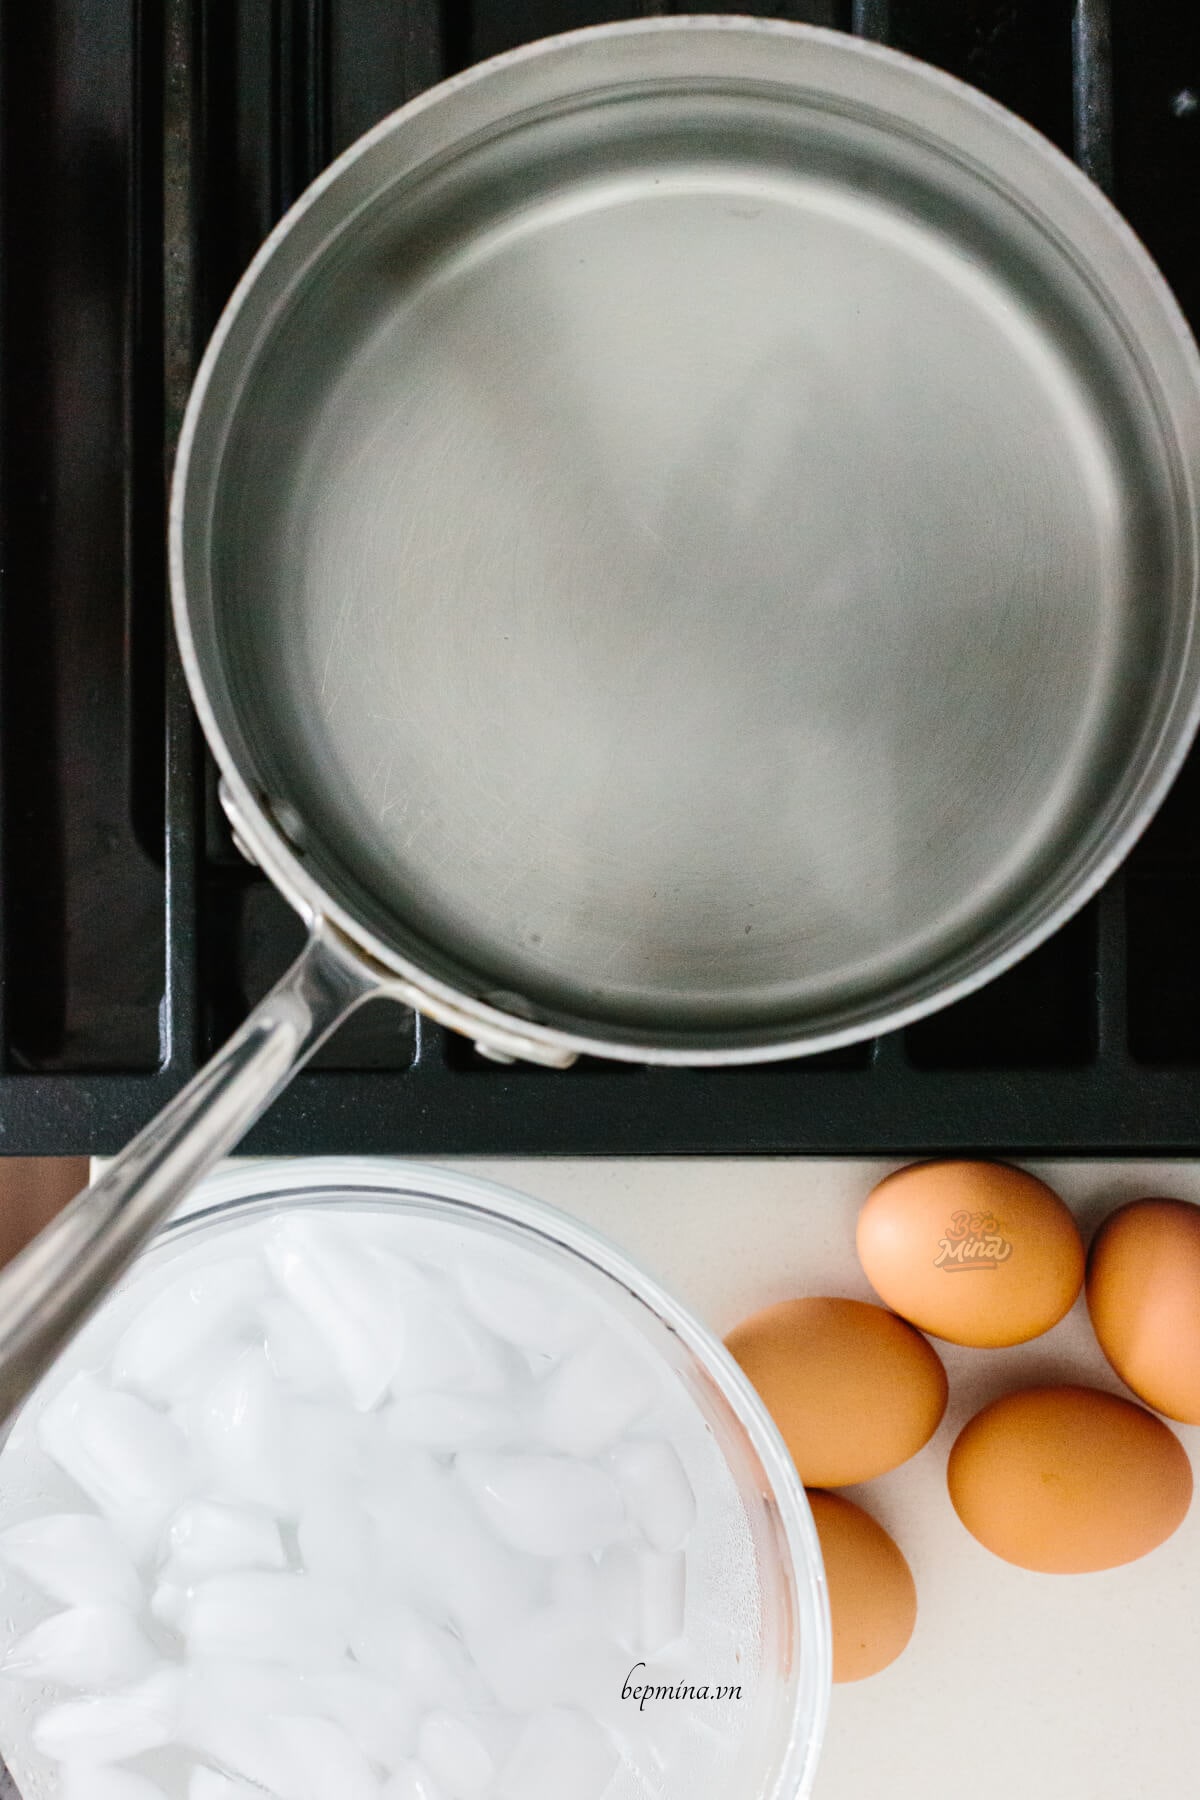 chuẩn bị luộc trứng